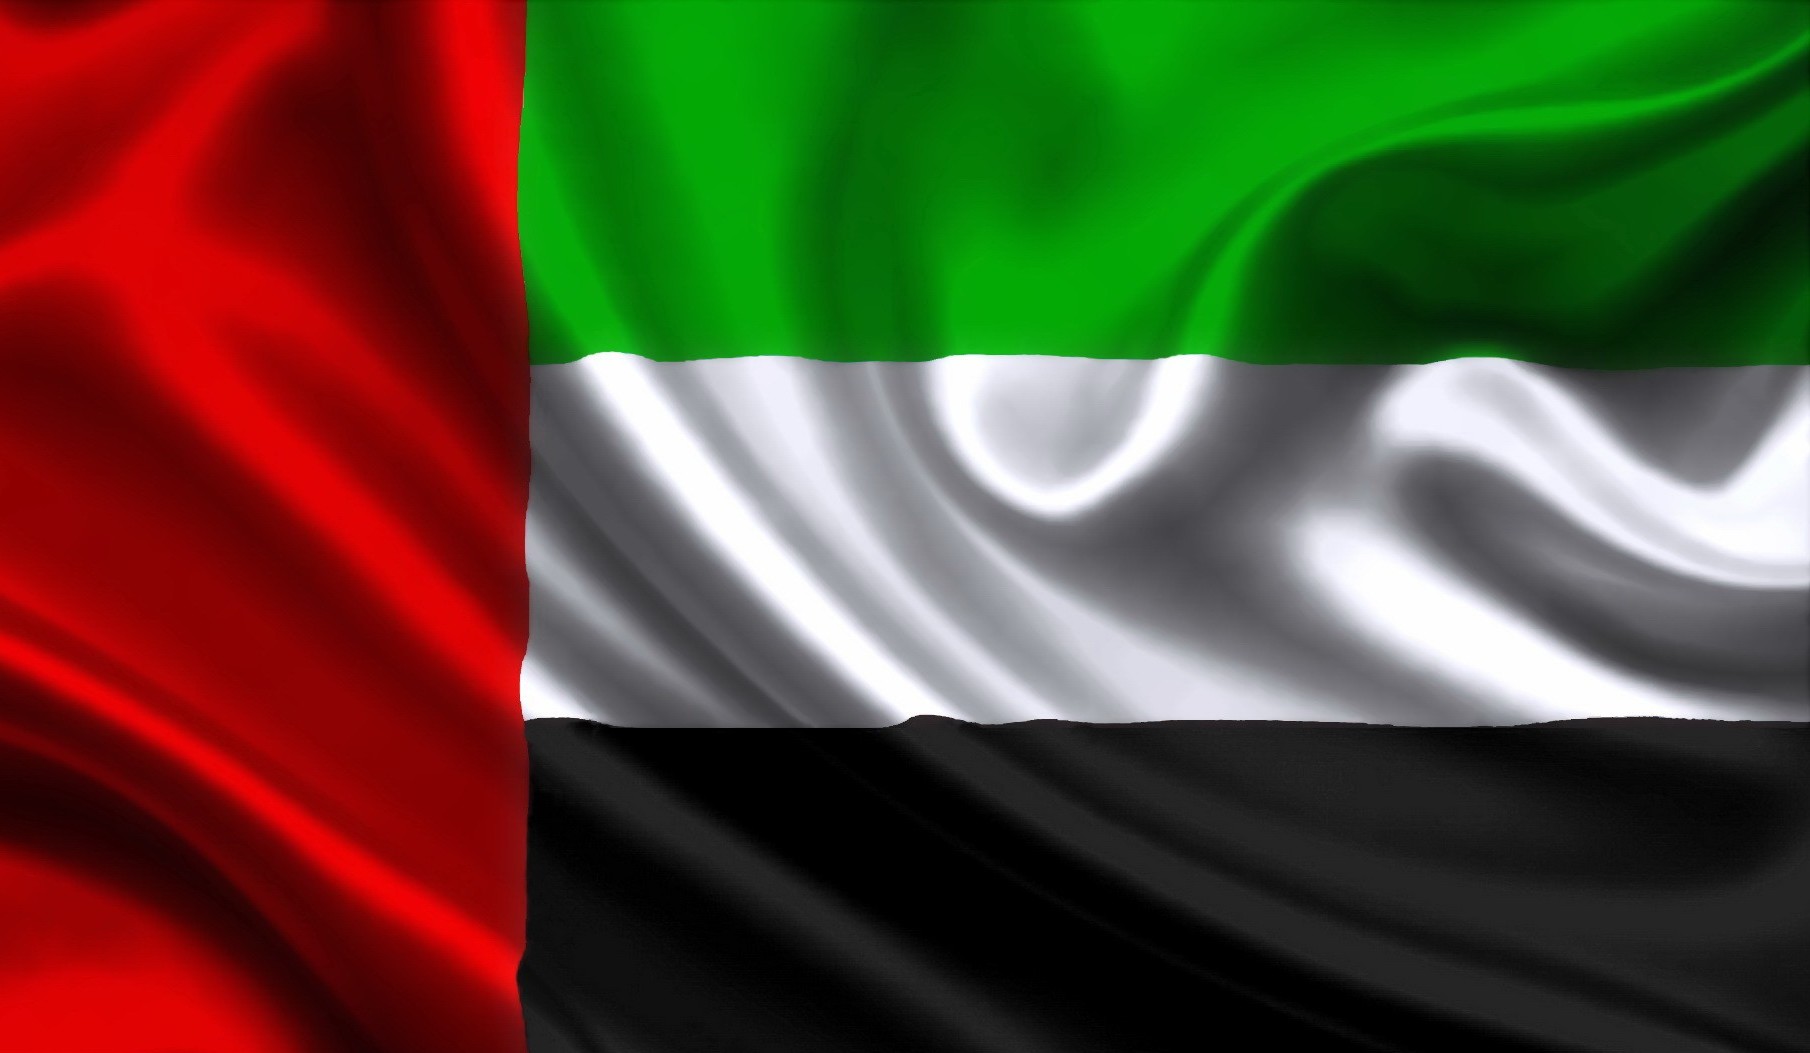 Международные консультации в формате ВКС «Объединенные Арабские Эмираты - окно возможностей» 09 августа 2022 г.